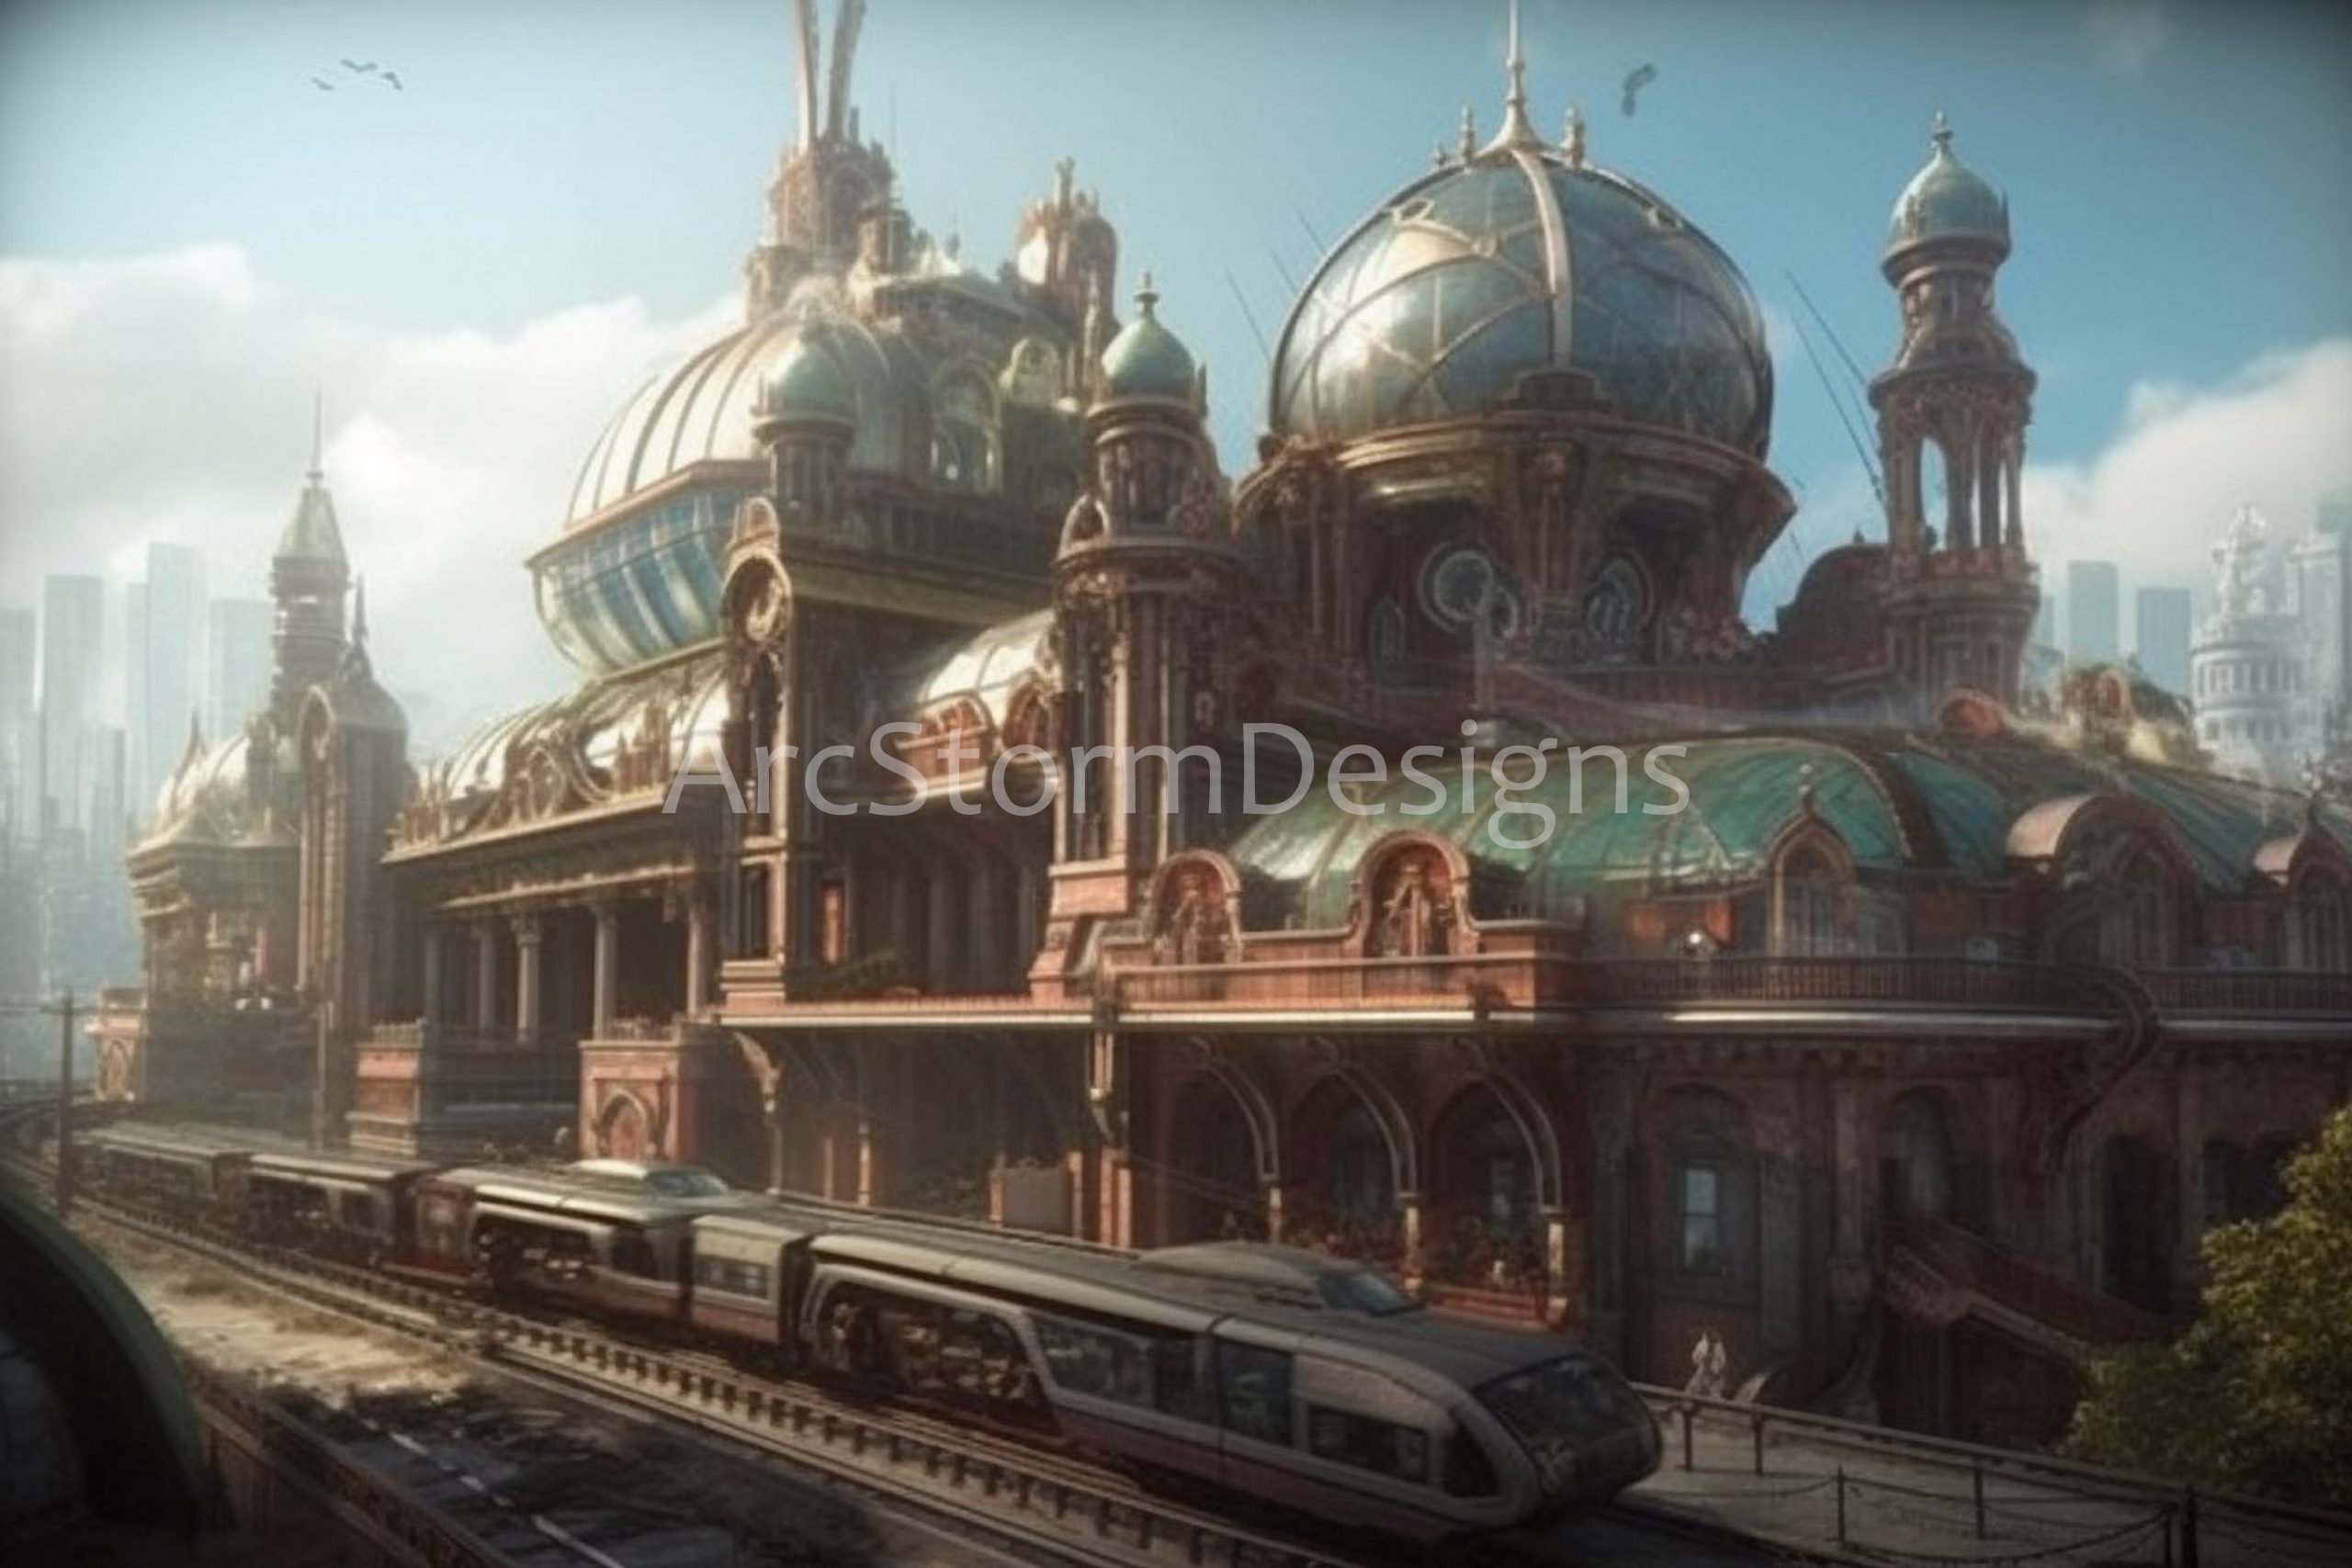 Future Train : A steampunk future concept piece